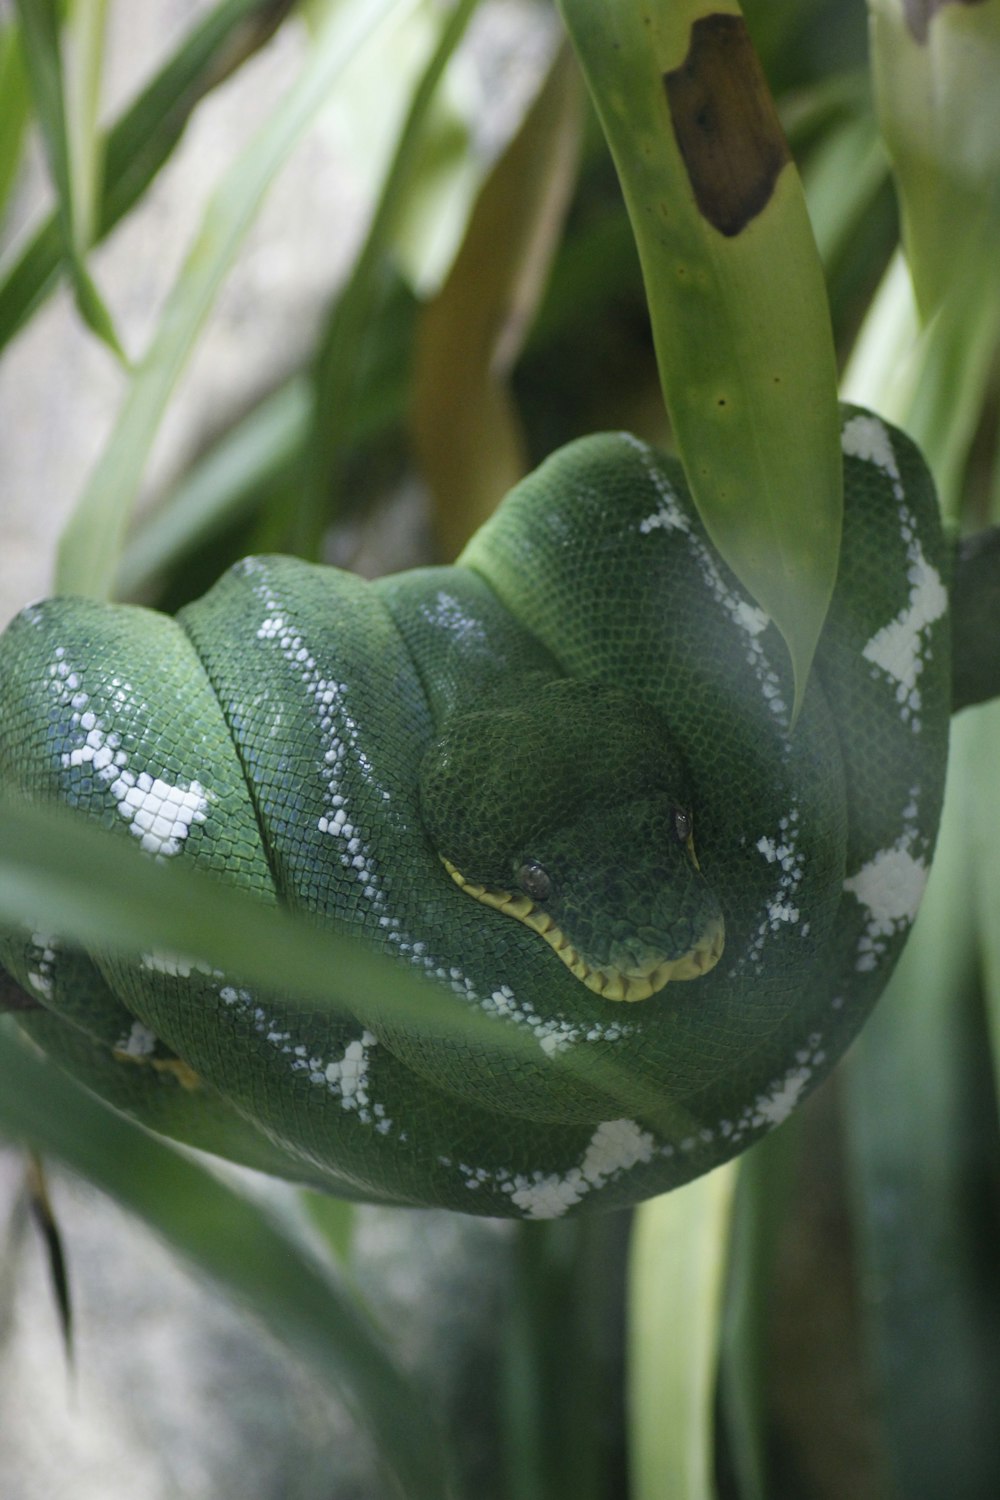 Una serpiente verde está acurrucada en una rama